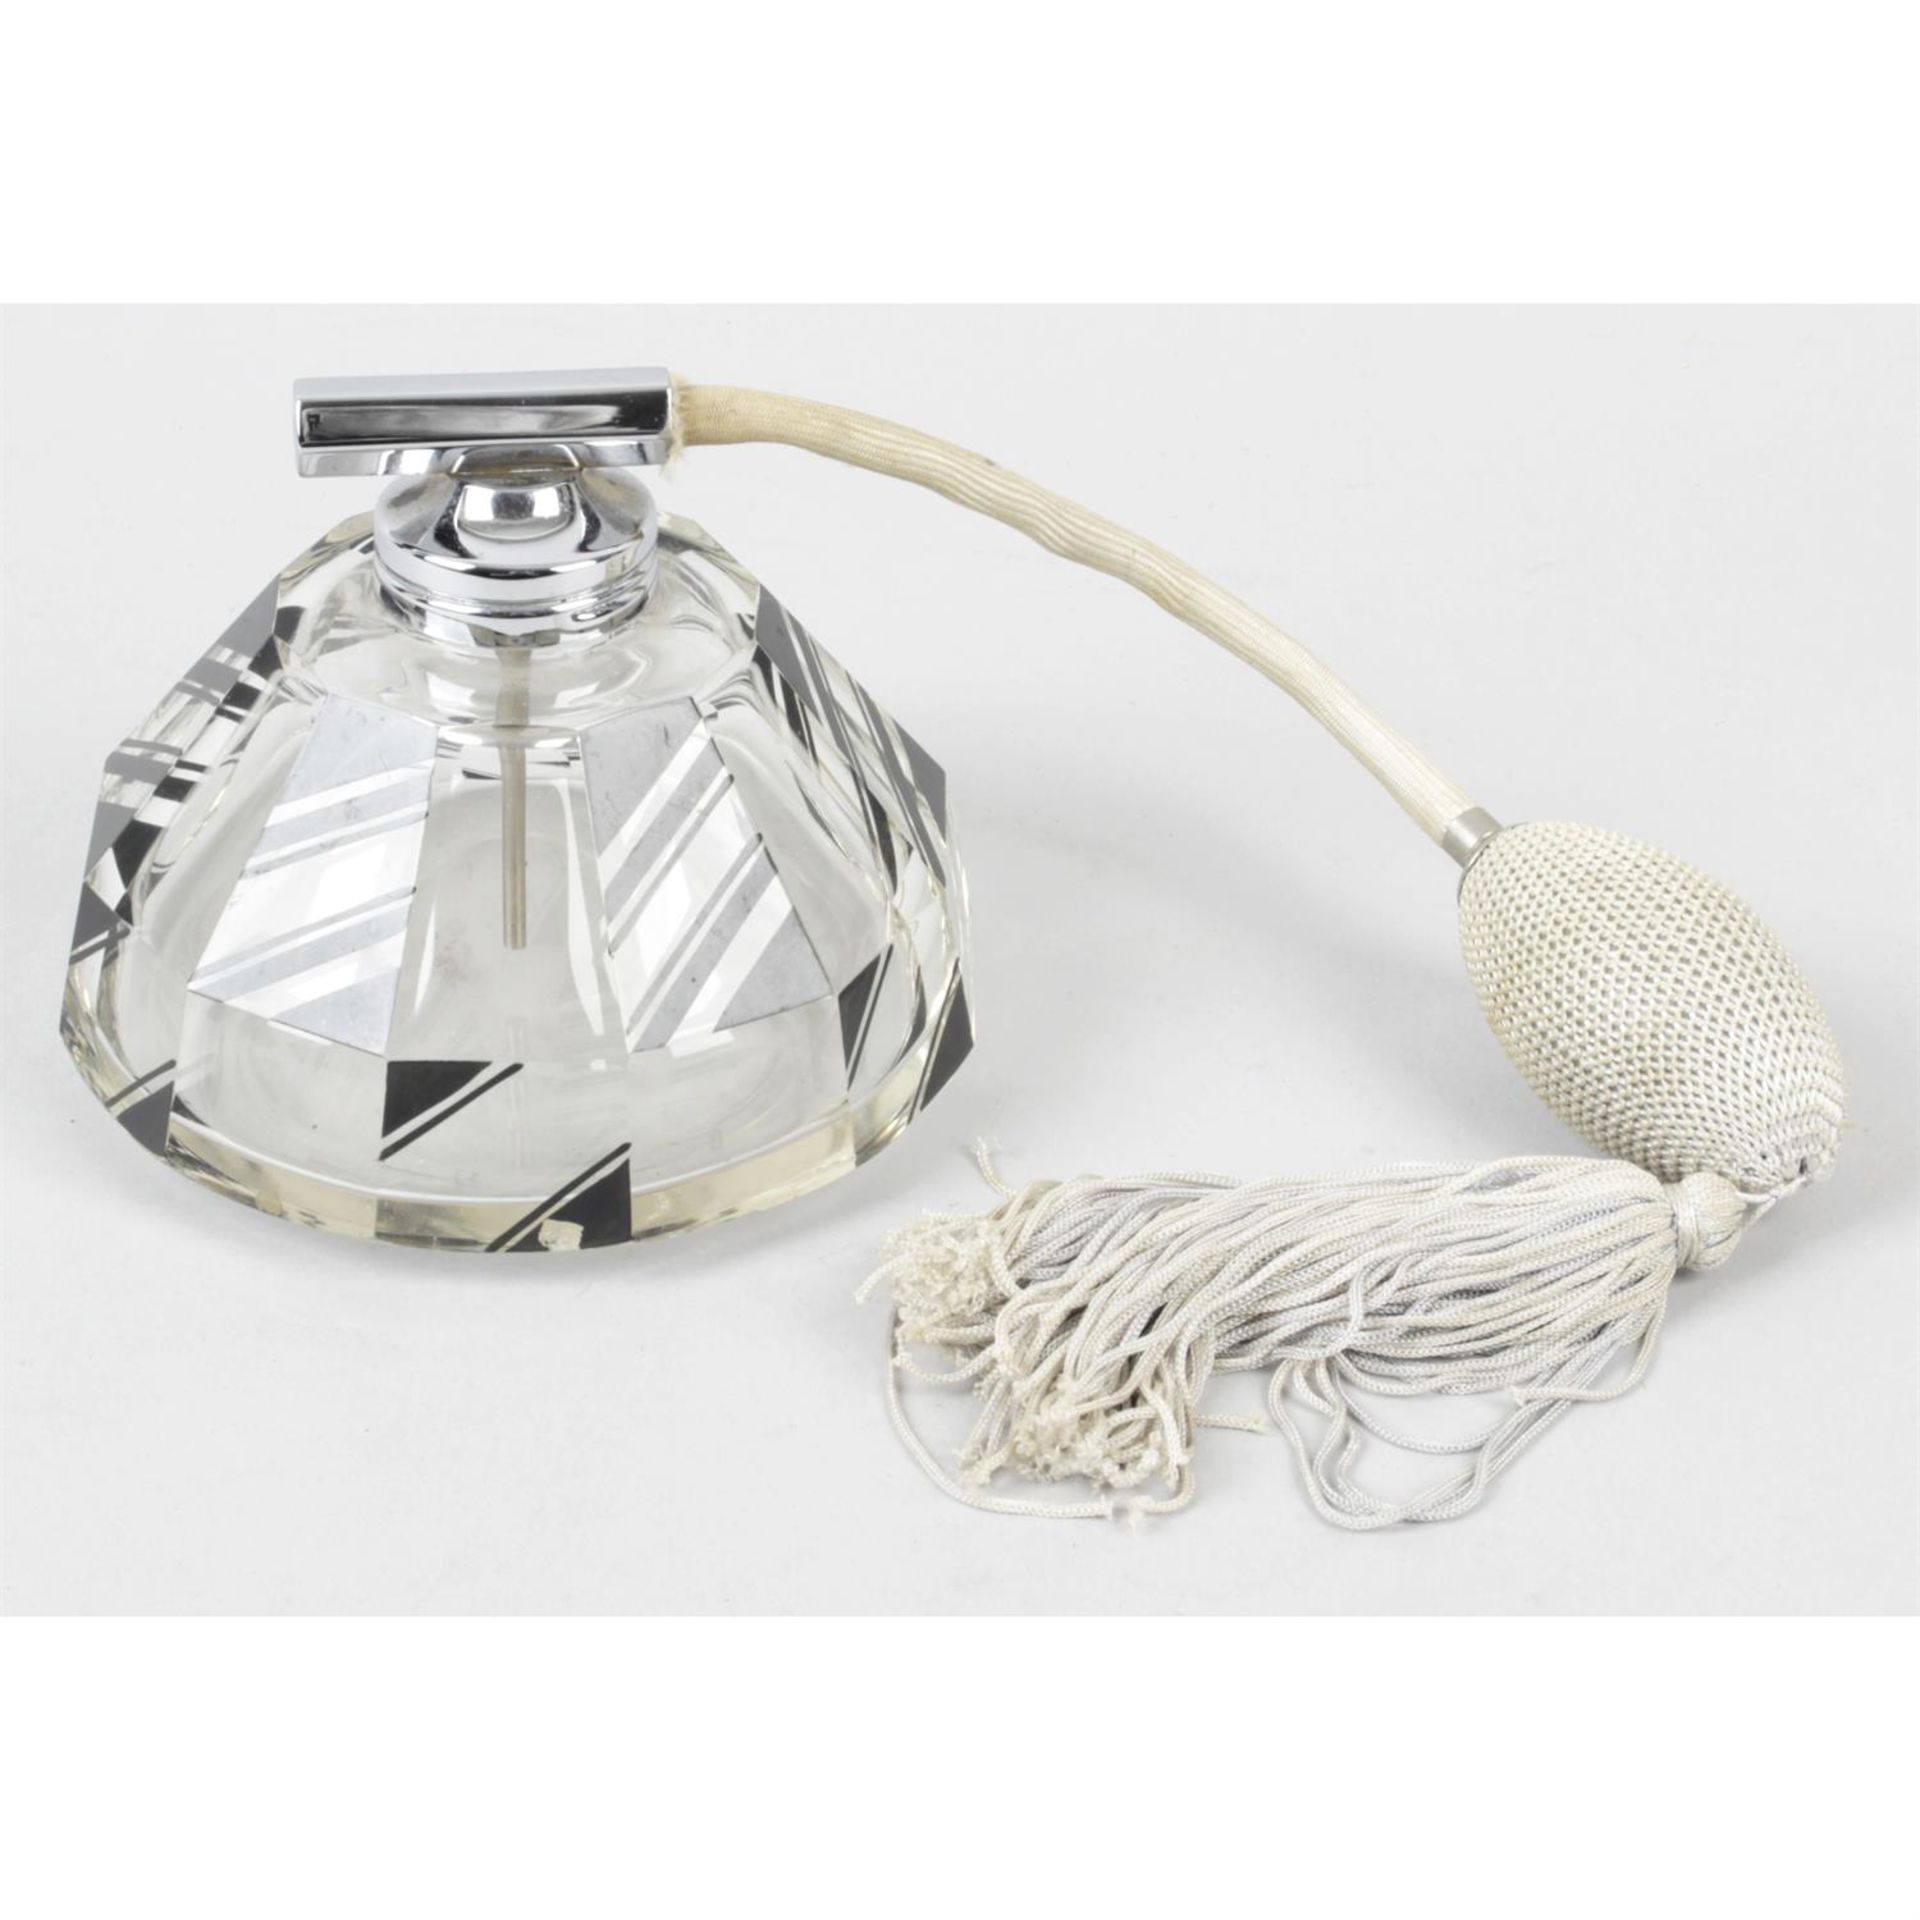 An Art Deco glass scent atomiser.